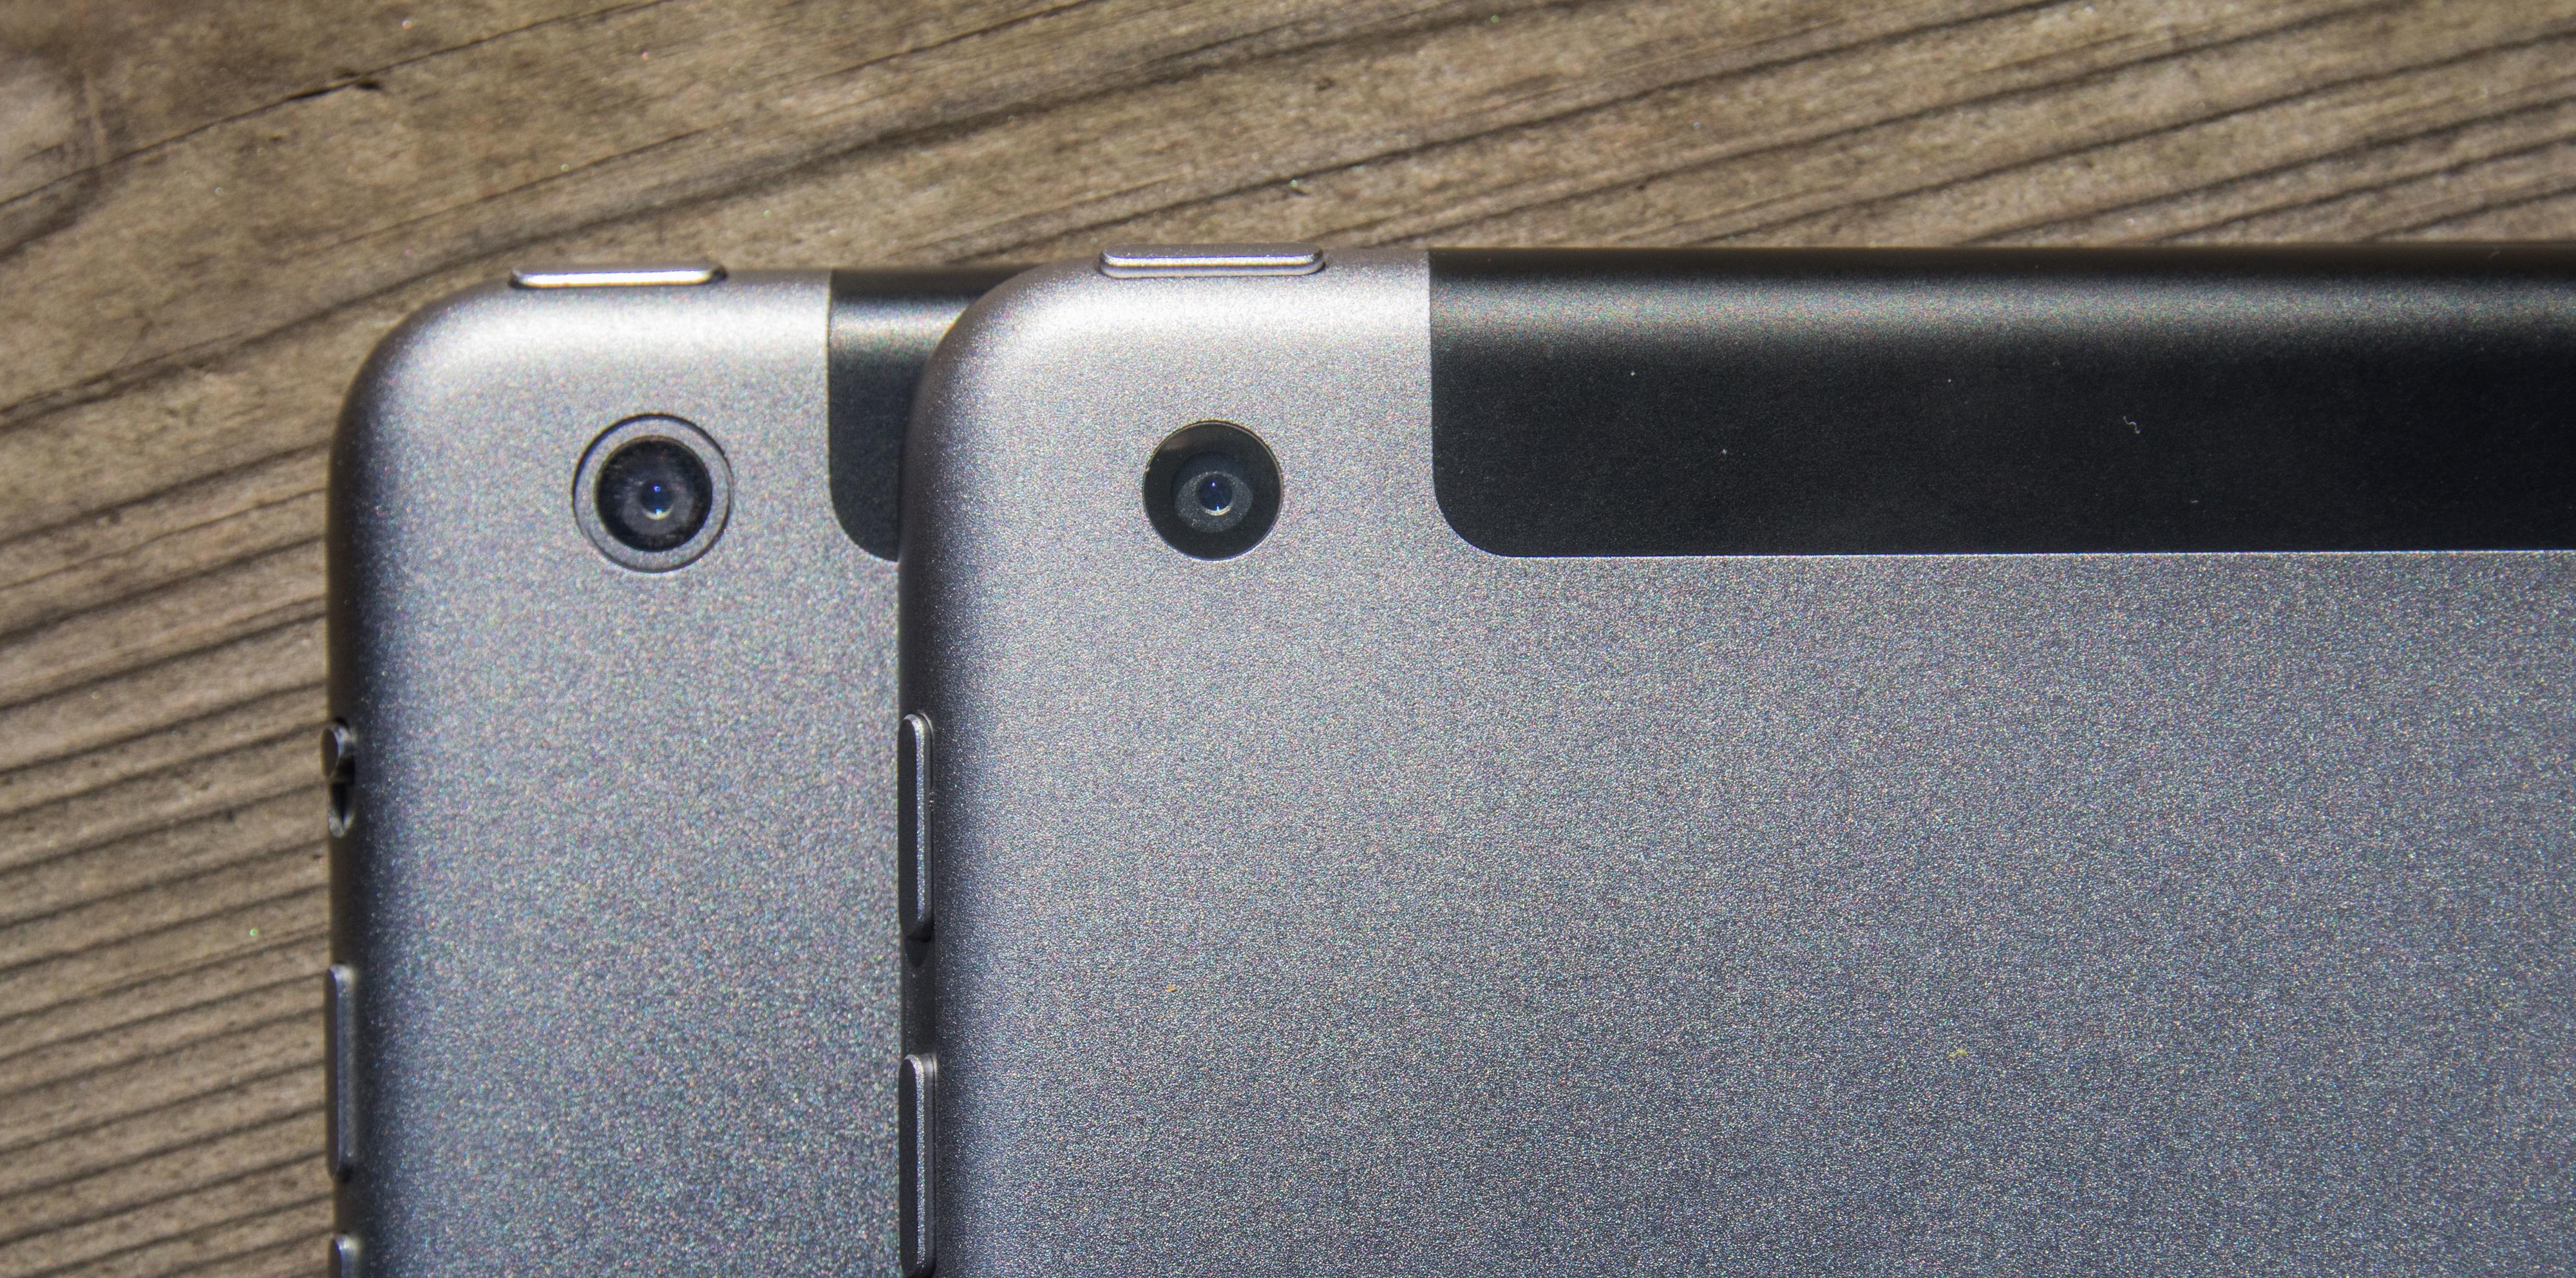 Det er ikke lett å se forskjellen, men den nye iPaden har ingen ring rundt kameraet, slik iPad Air har.